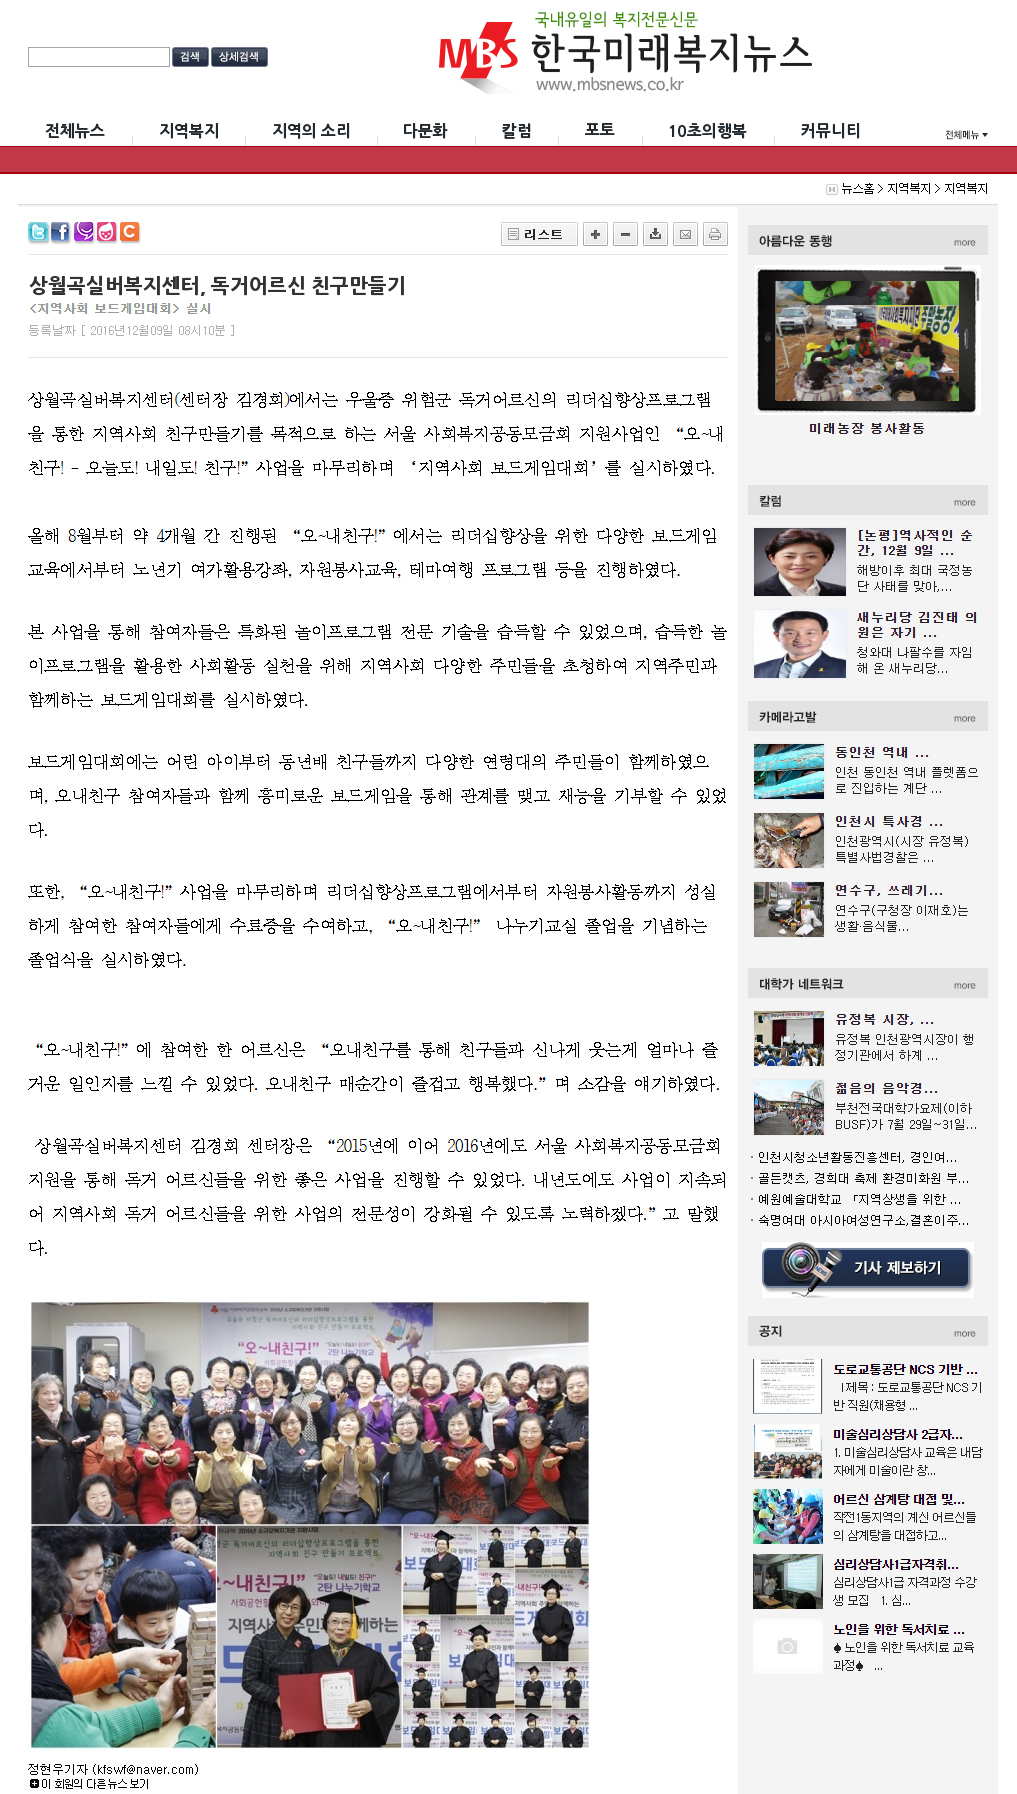 (1208)오내친구보드게임대회(한국미래복지뉴스).jpg